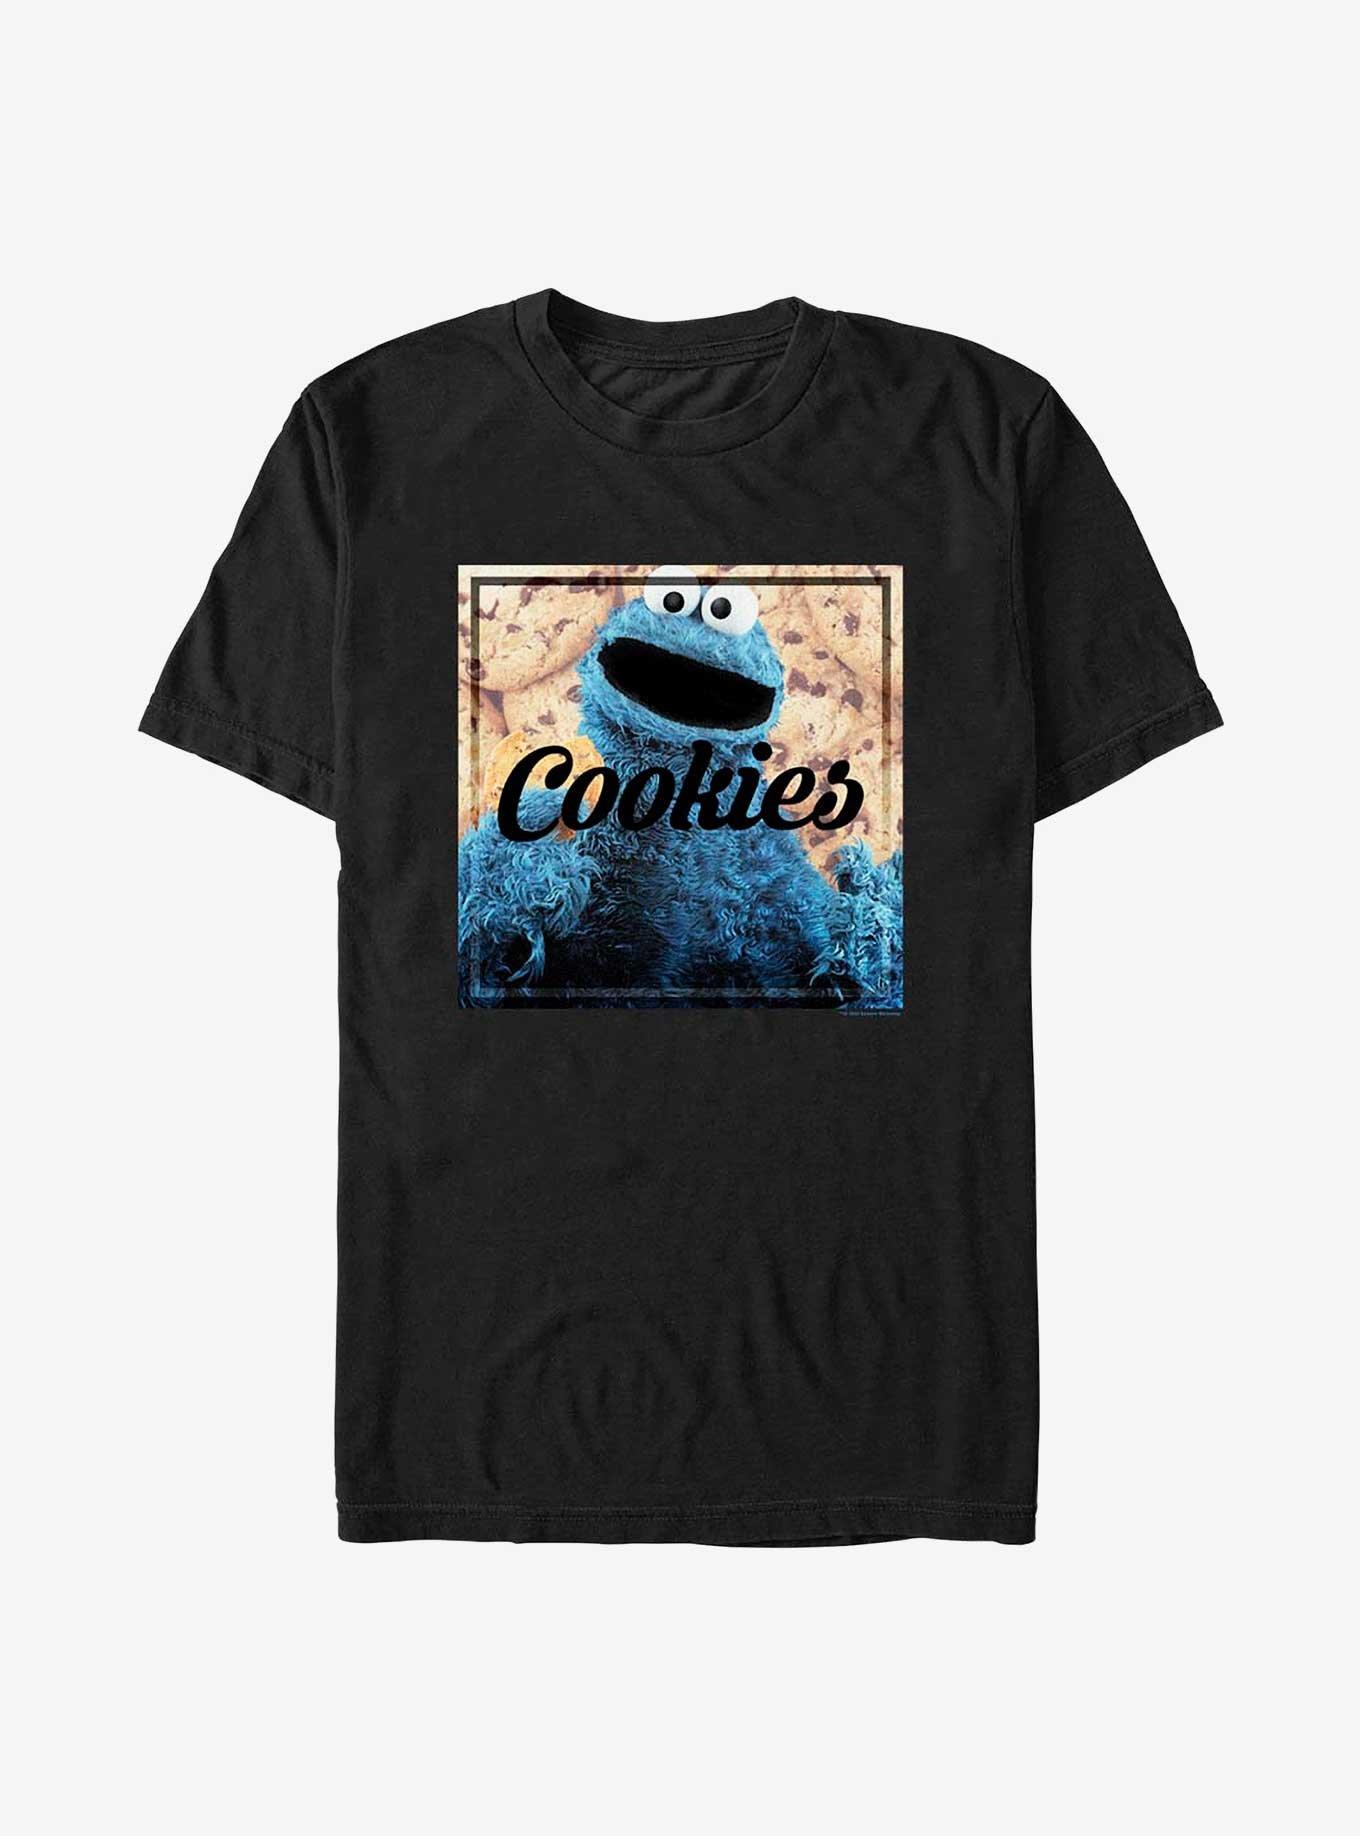 Sesame Street Cookies T-Shirt